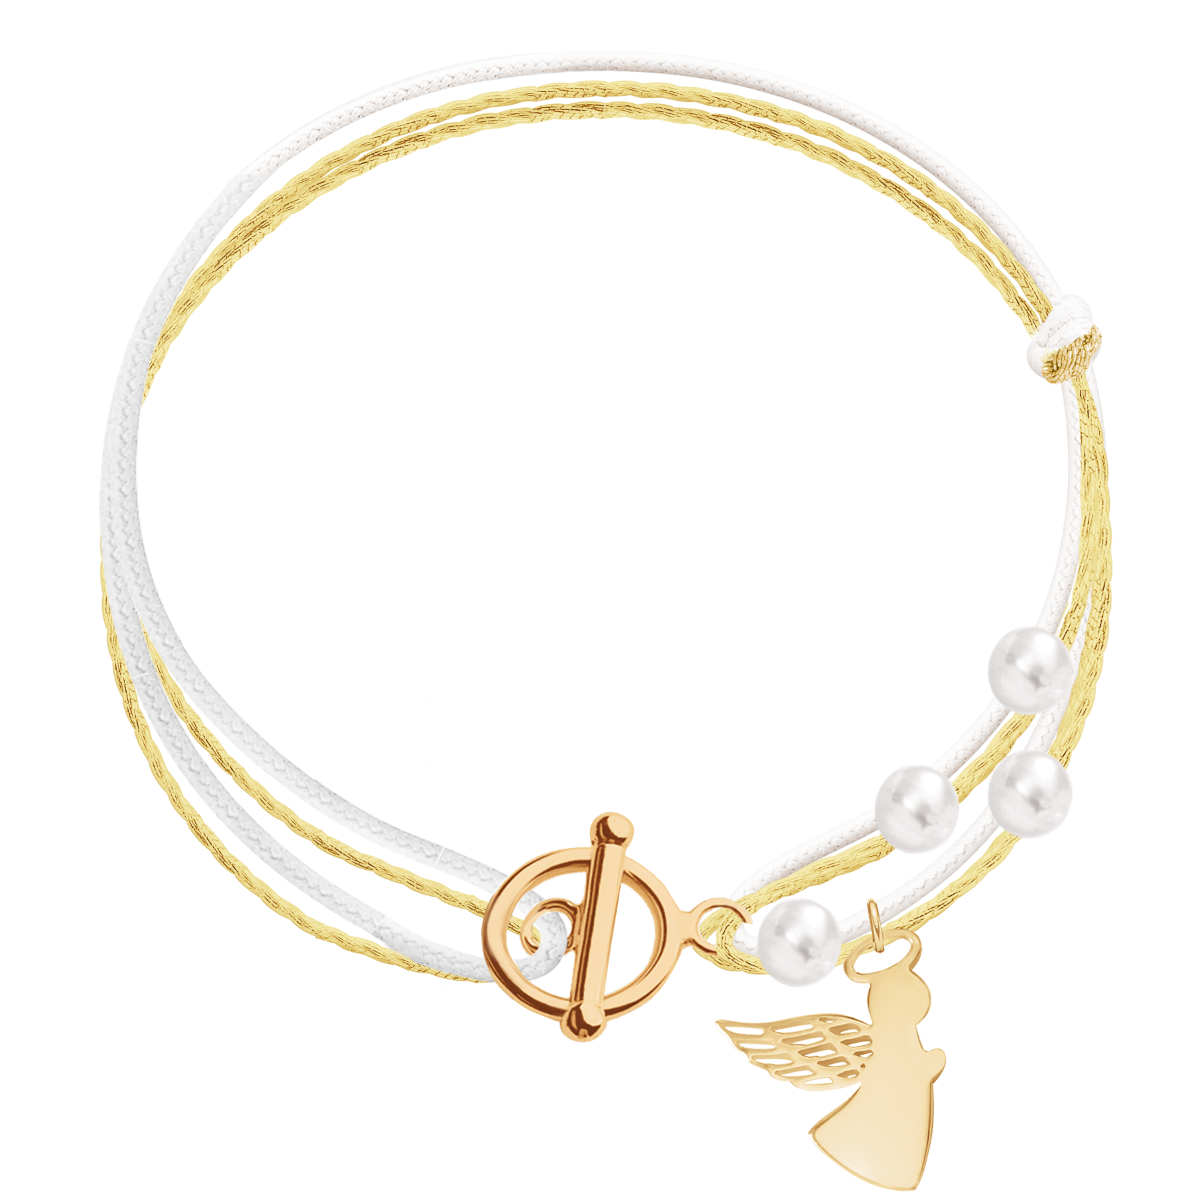 Armband mit Engel und Perlen am weißen ung goldenen Schnurband